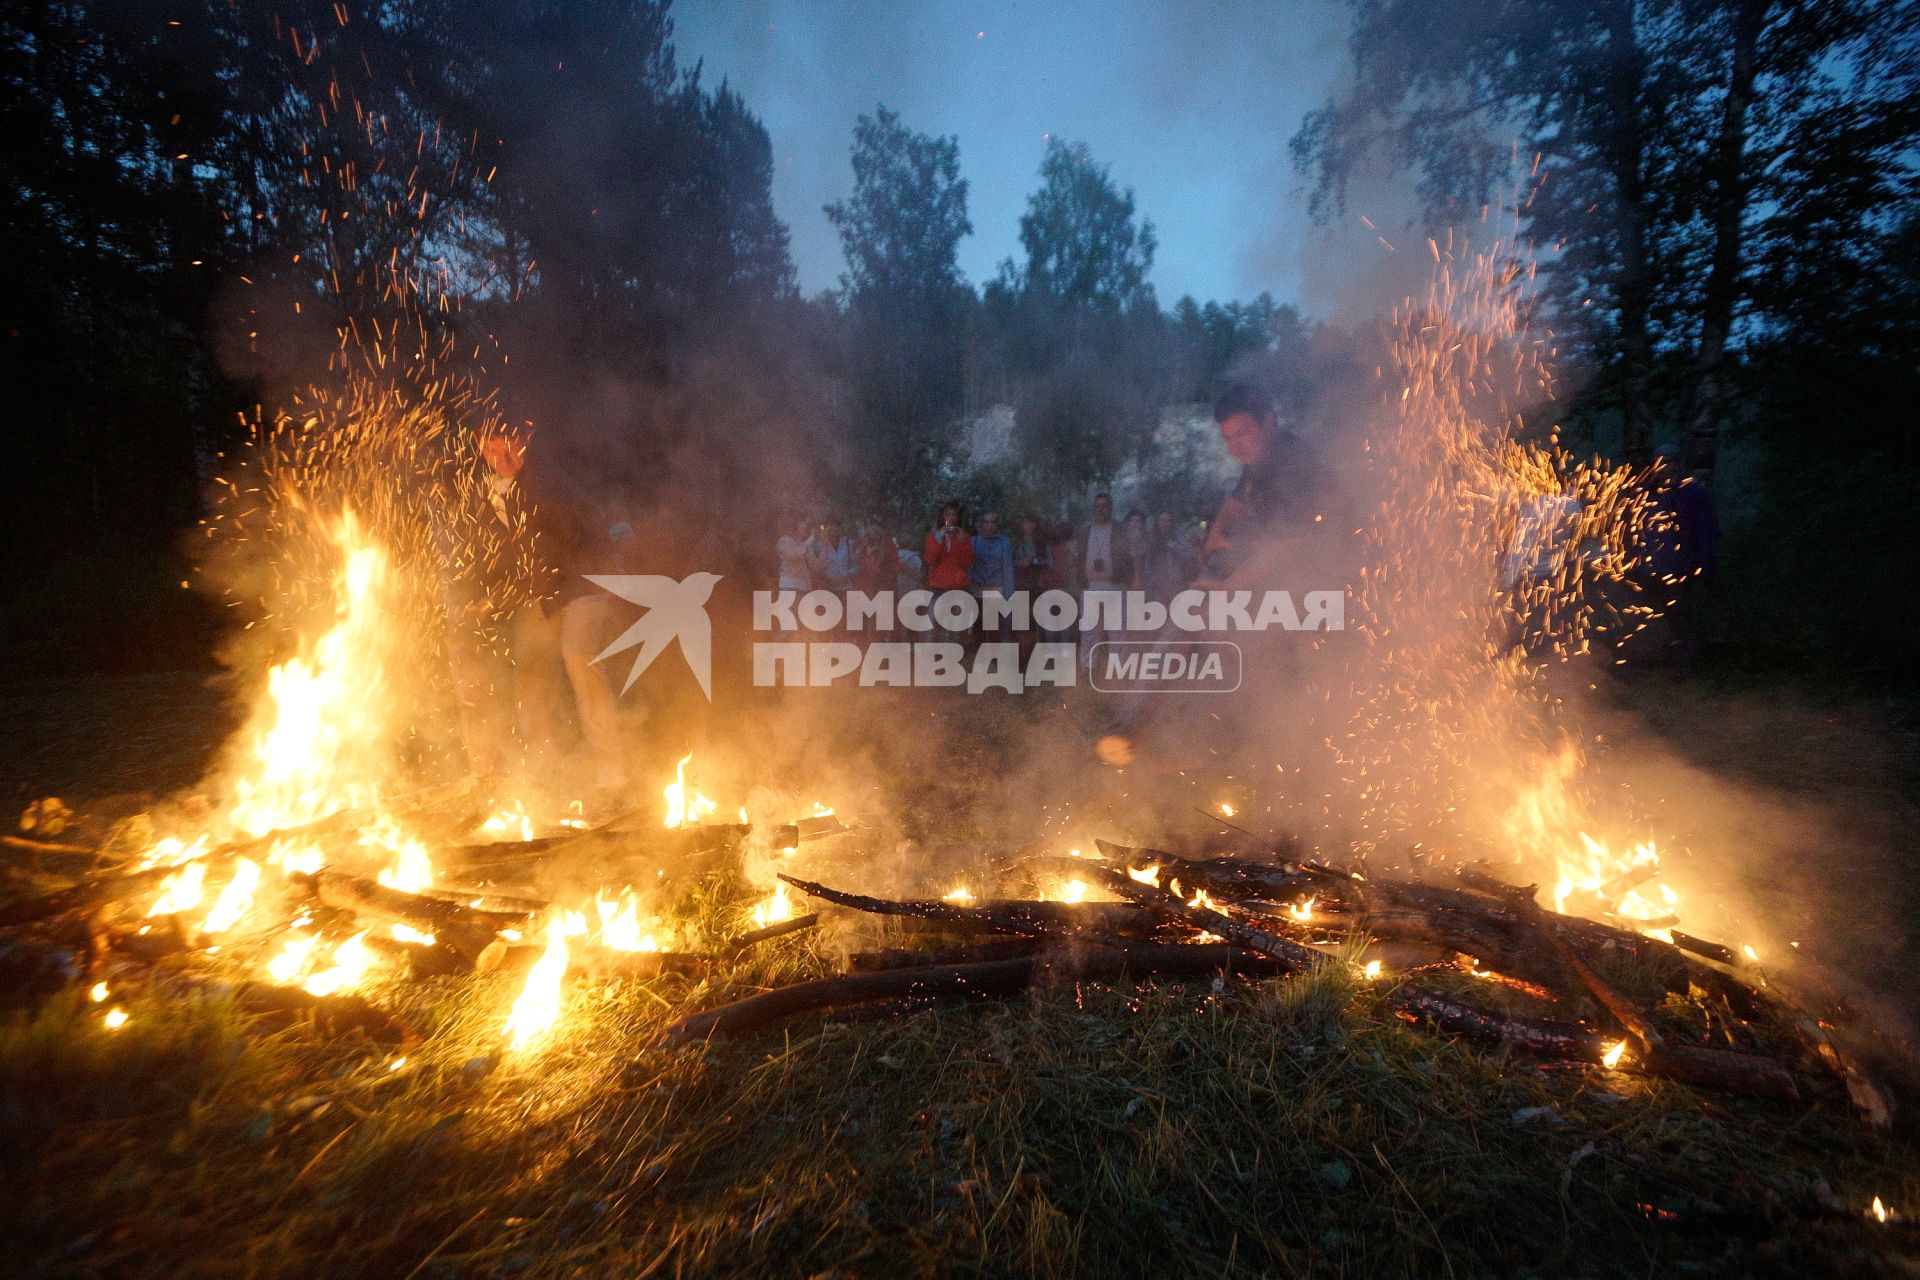 Участники празднования дня Ивана Купала после обряда очищения огнем рушат два больших костра (закрывая ворота)